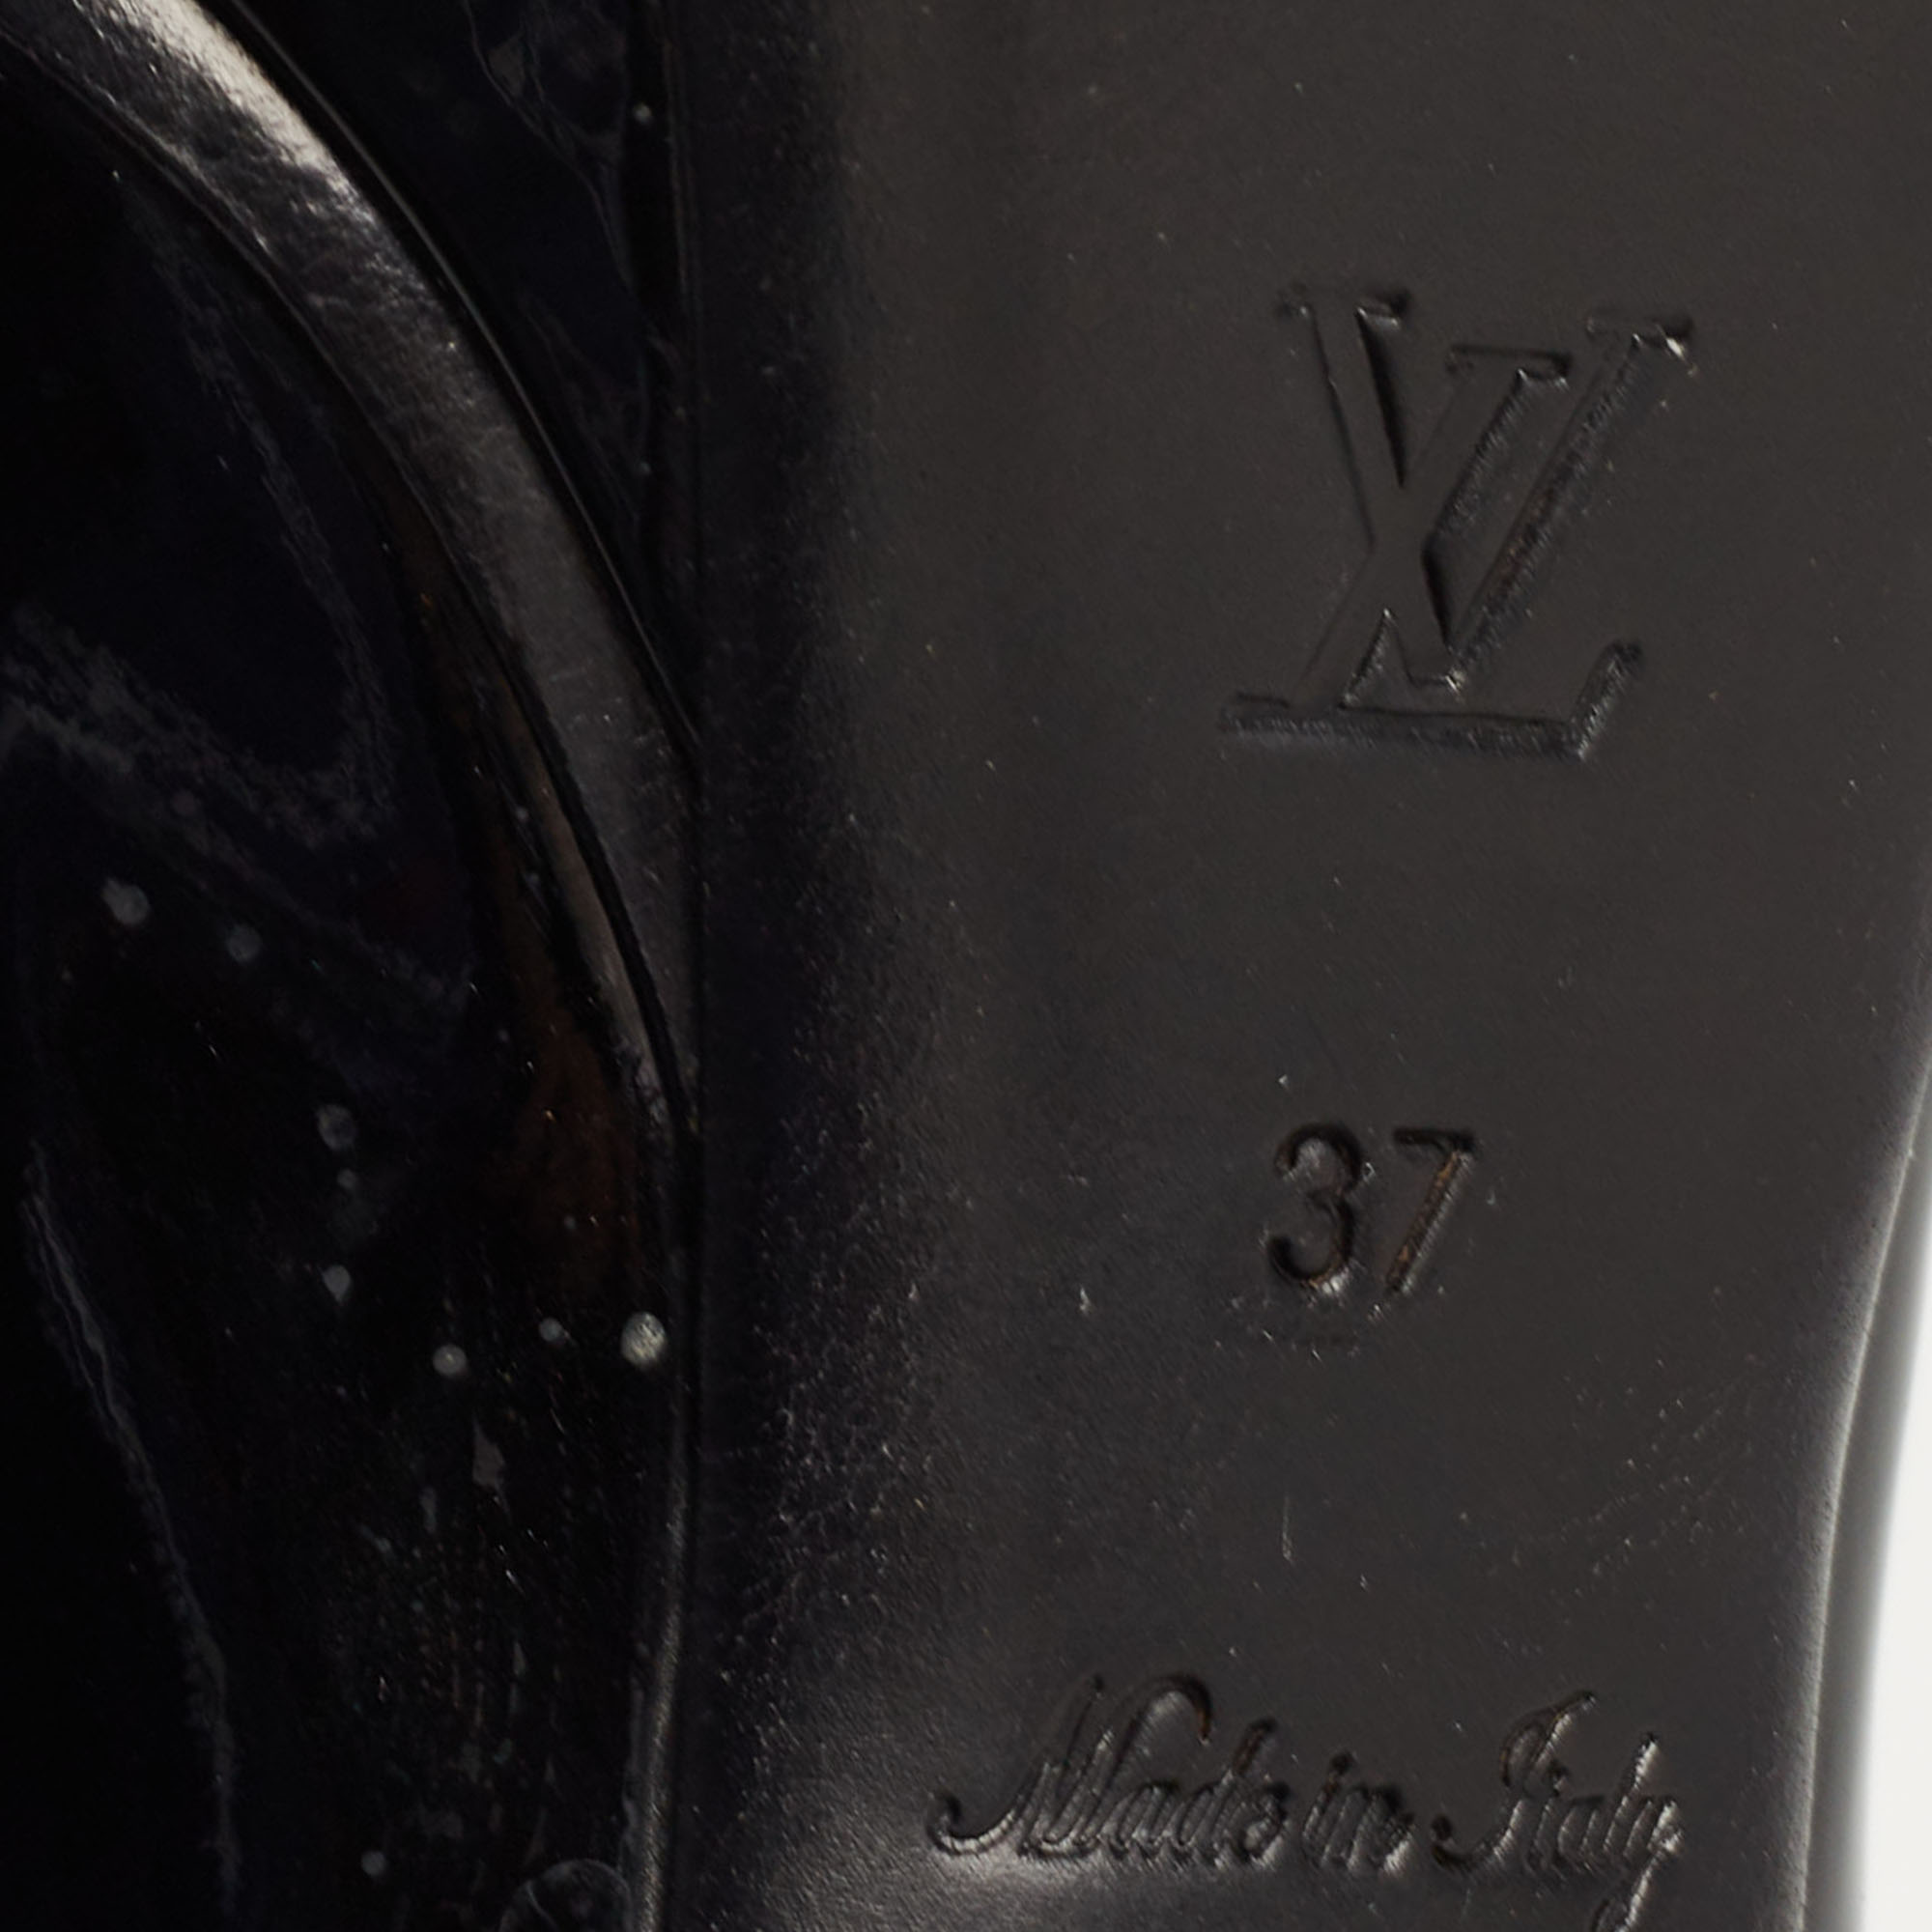 Louis Vuitton Black Patent Leather Peep Toe Platform Pumps Size 37